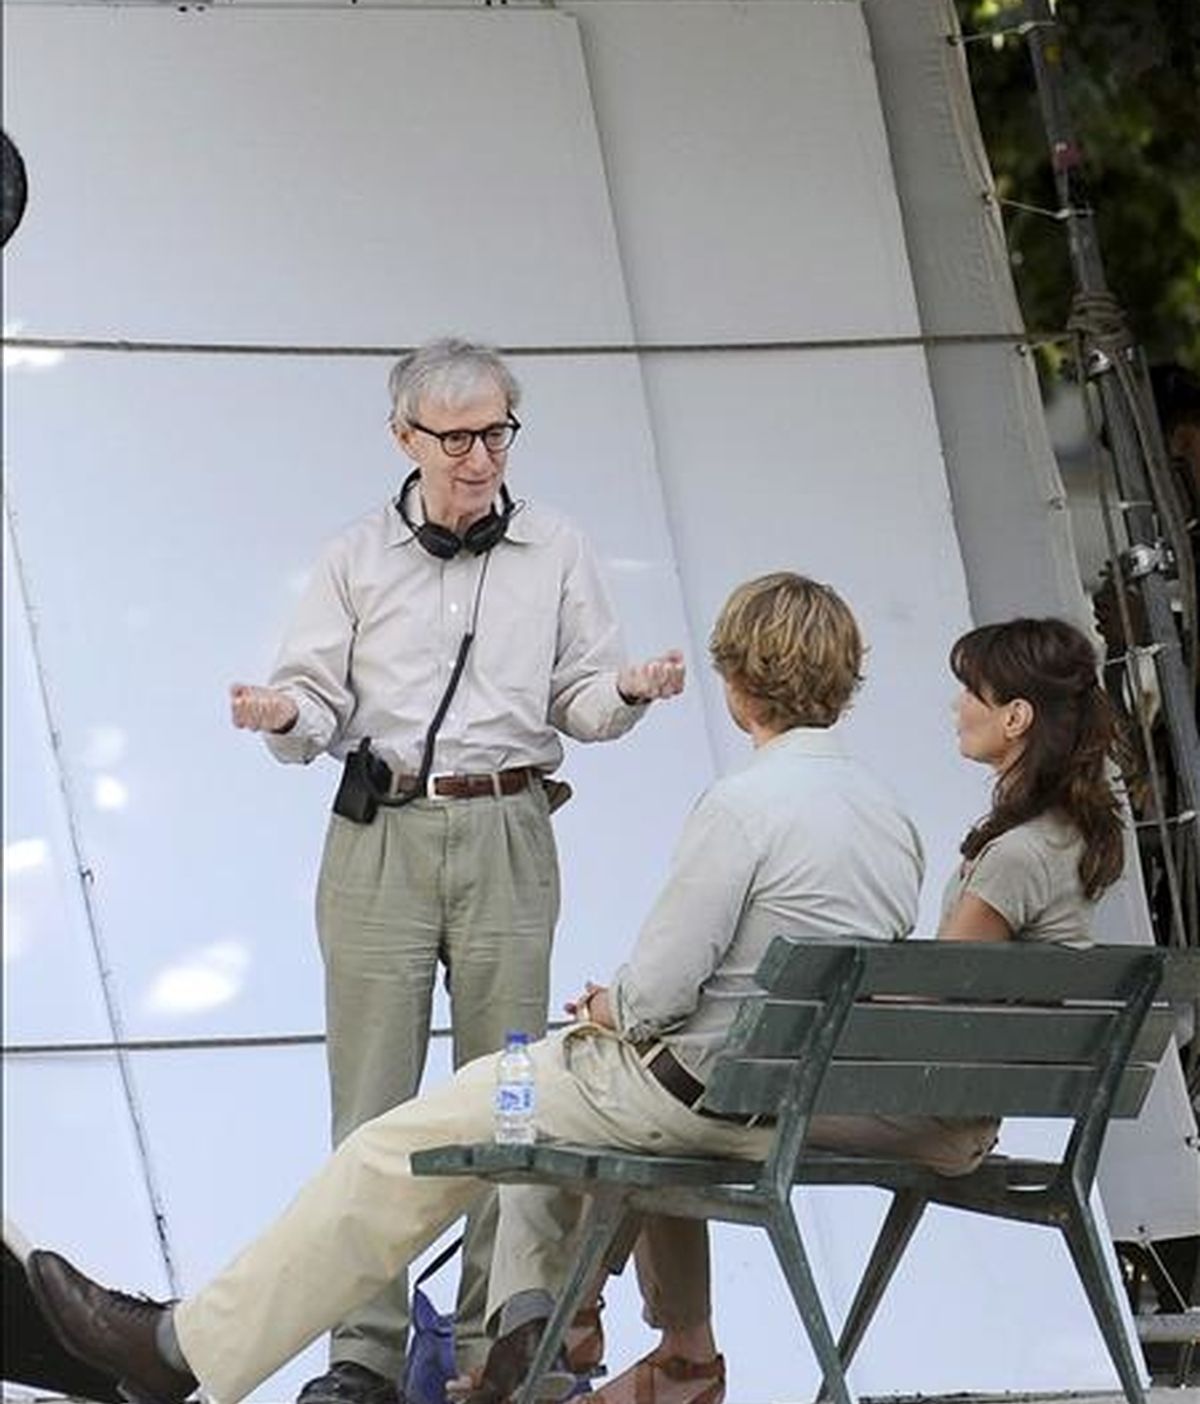 El director estadounidense Woody Allen (c) habla con la primera dama francesa Carla Bruni-Sarkozy (d) y el actor estadounidense Owen Wilson (2-d) en la plaza Juan XXIII, detrás de la catedral de Notre Dame, durante el rodaje de su película "Media noche en París", el pasado miércoles. EFE